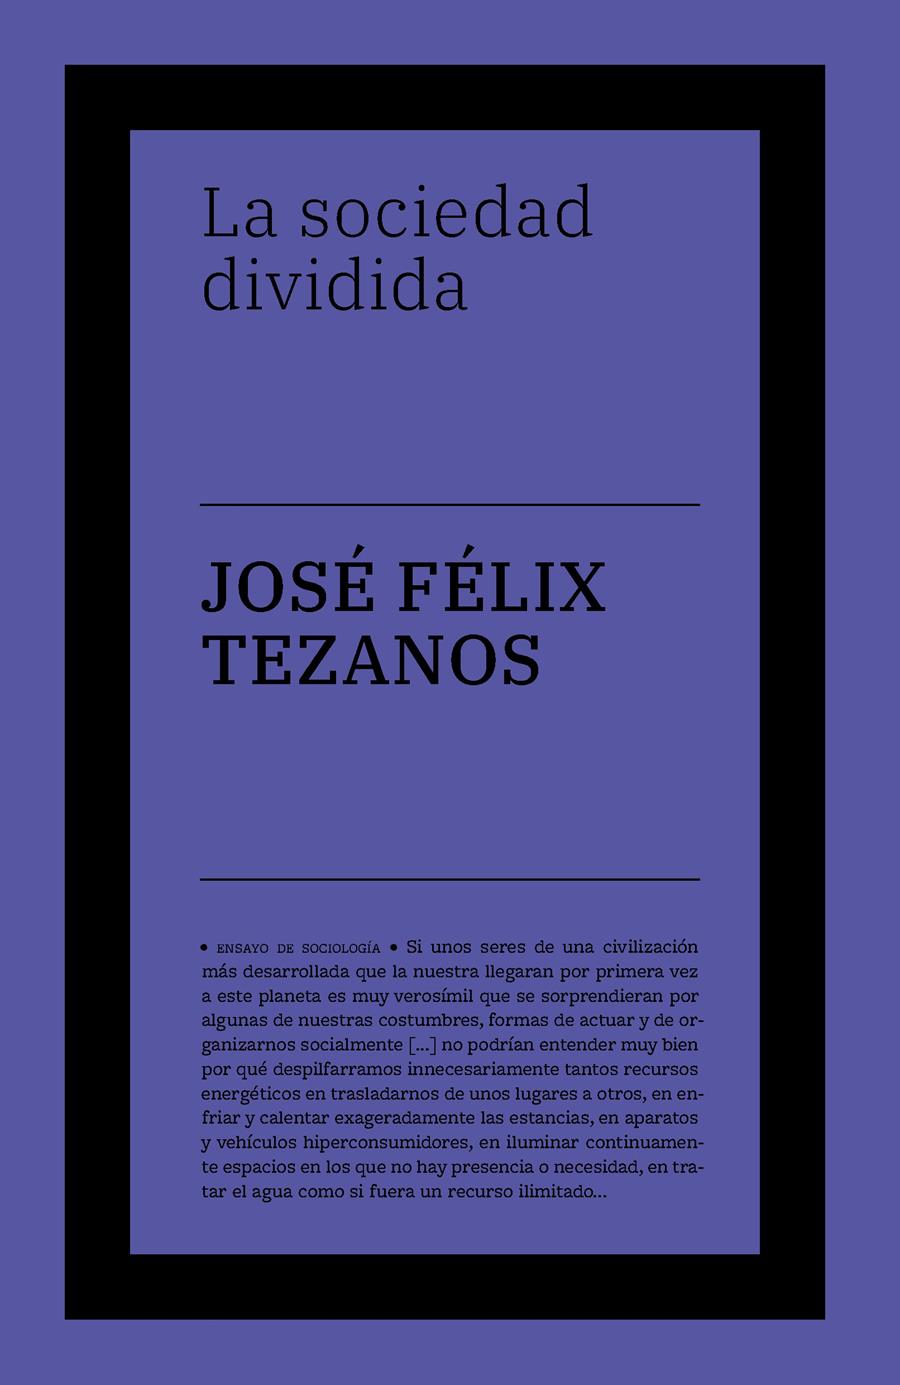 La sociedad dividida | Tezanos, José Félix | Cooperativa autogestionària